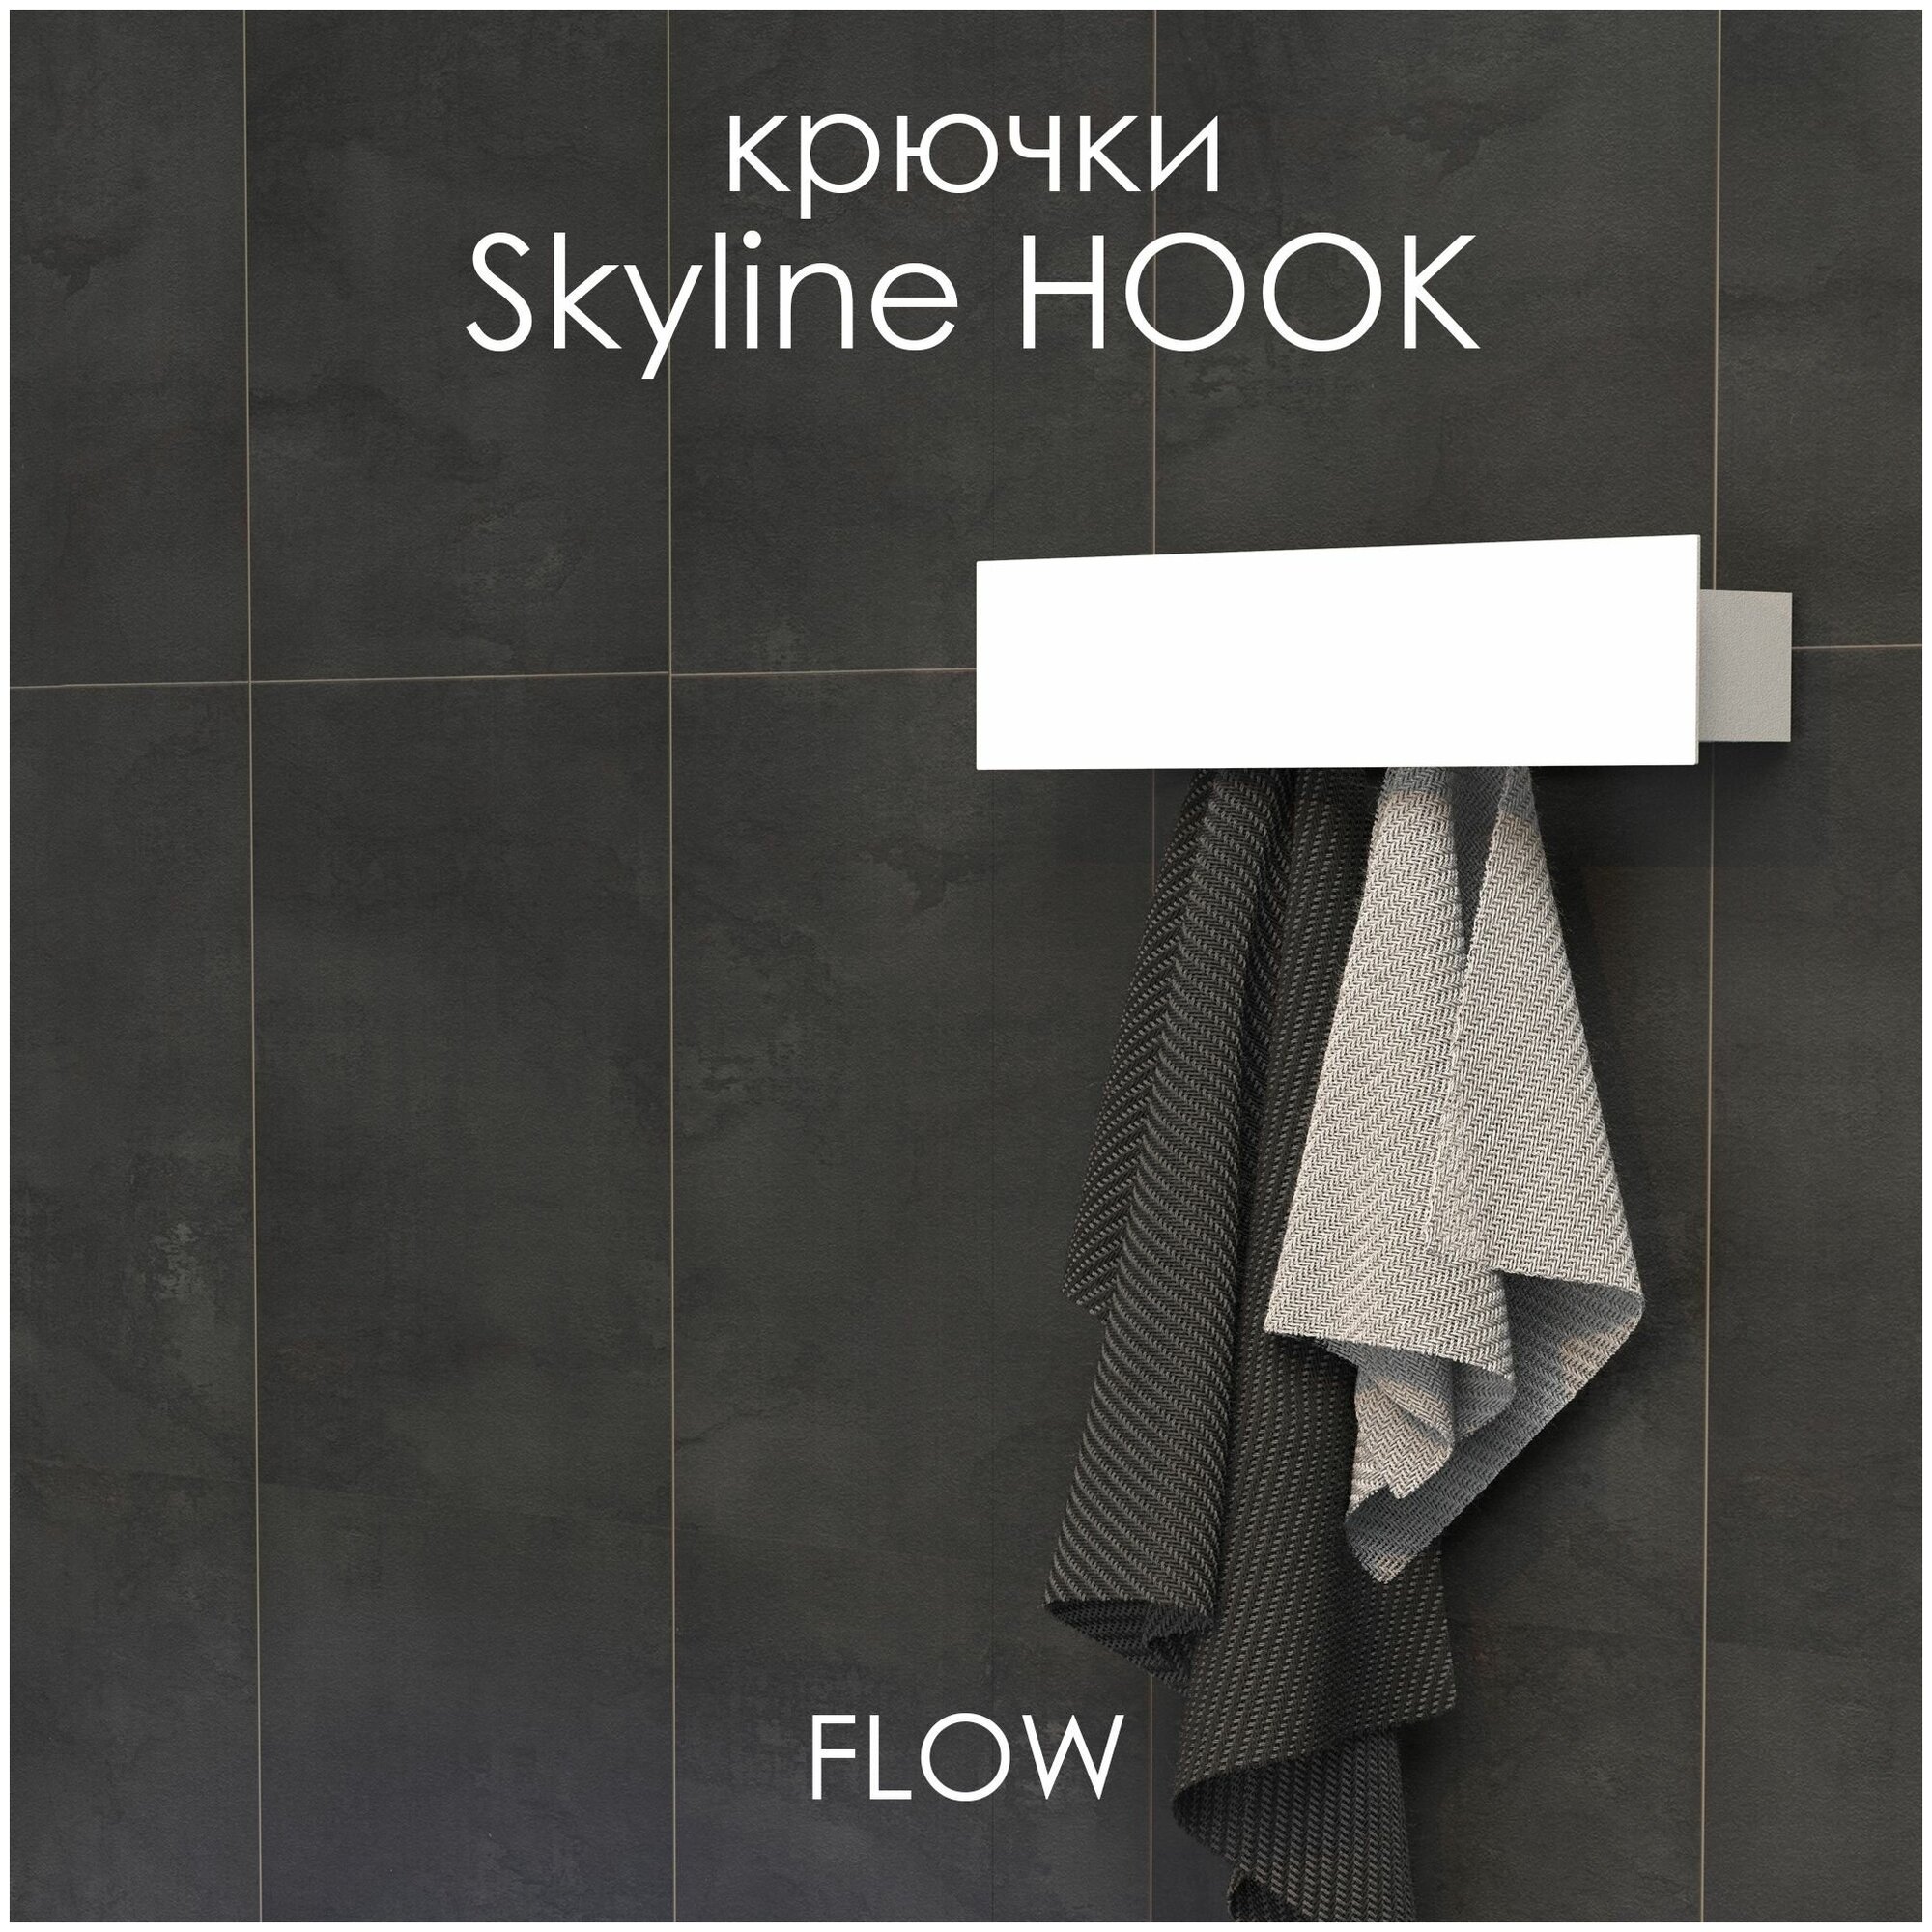 Крючки для ванной Skyline Hook 40*9.2*9 см, белый, 4 крючка / Крючки для одежды FLOW